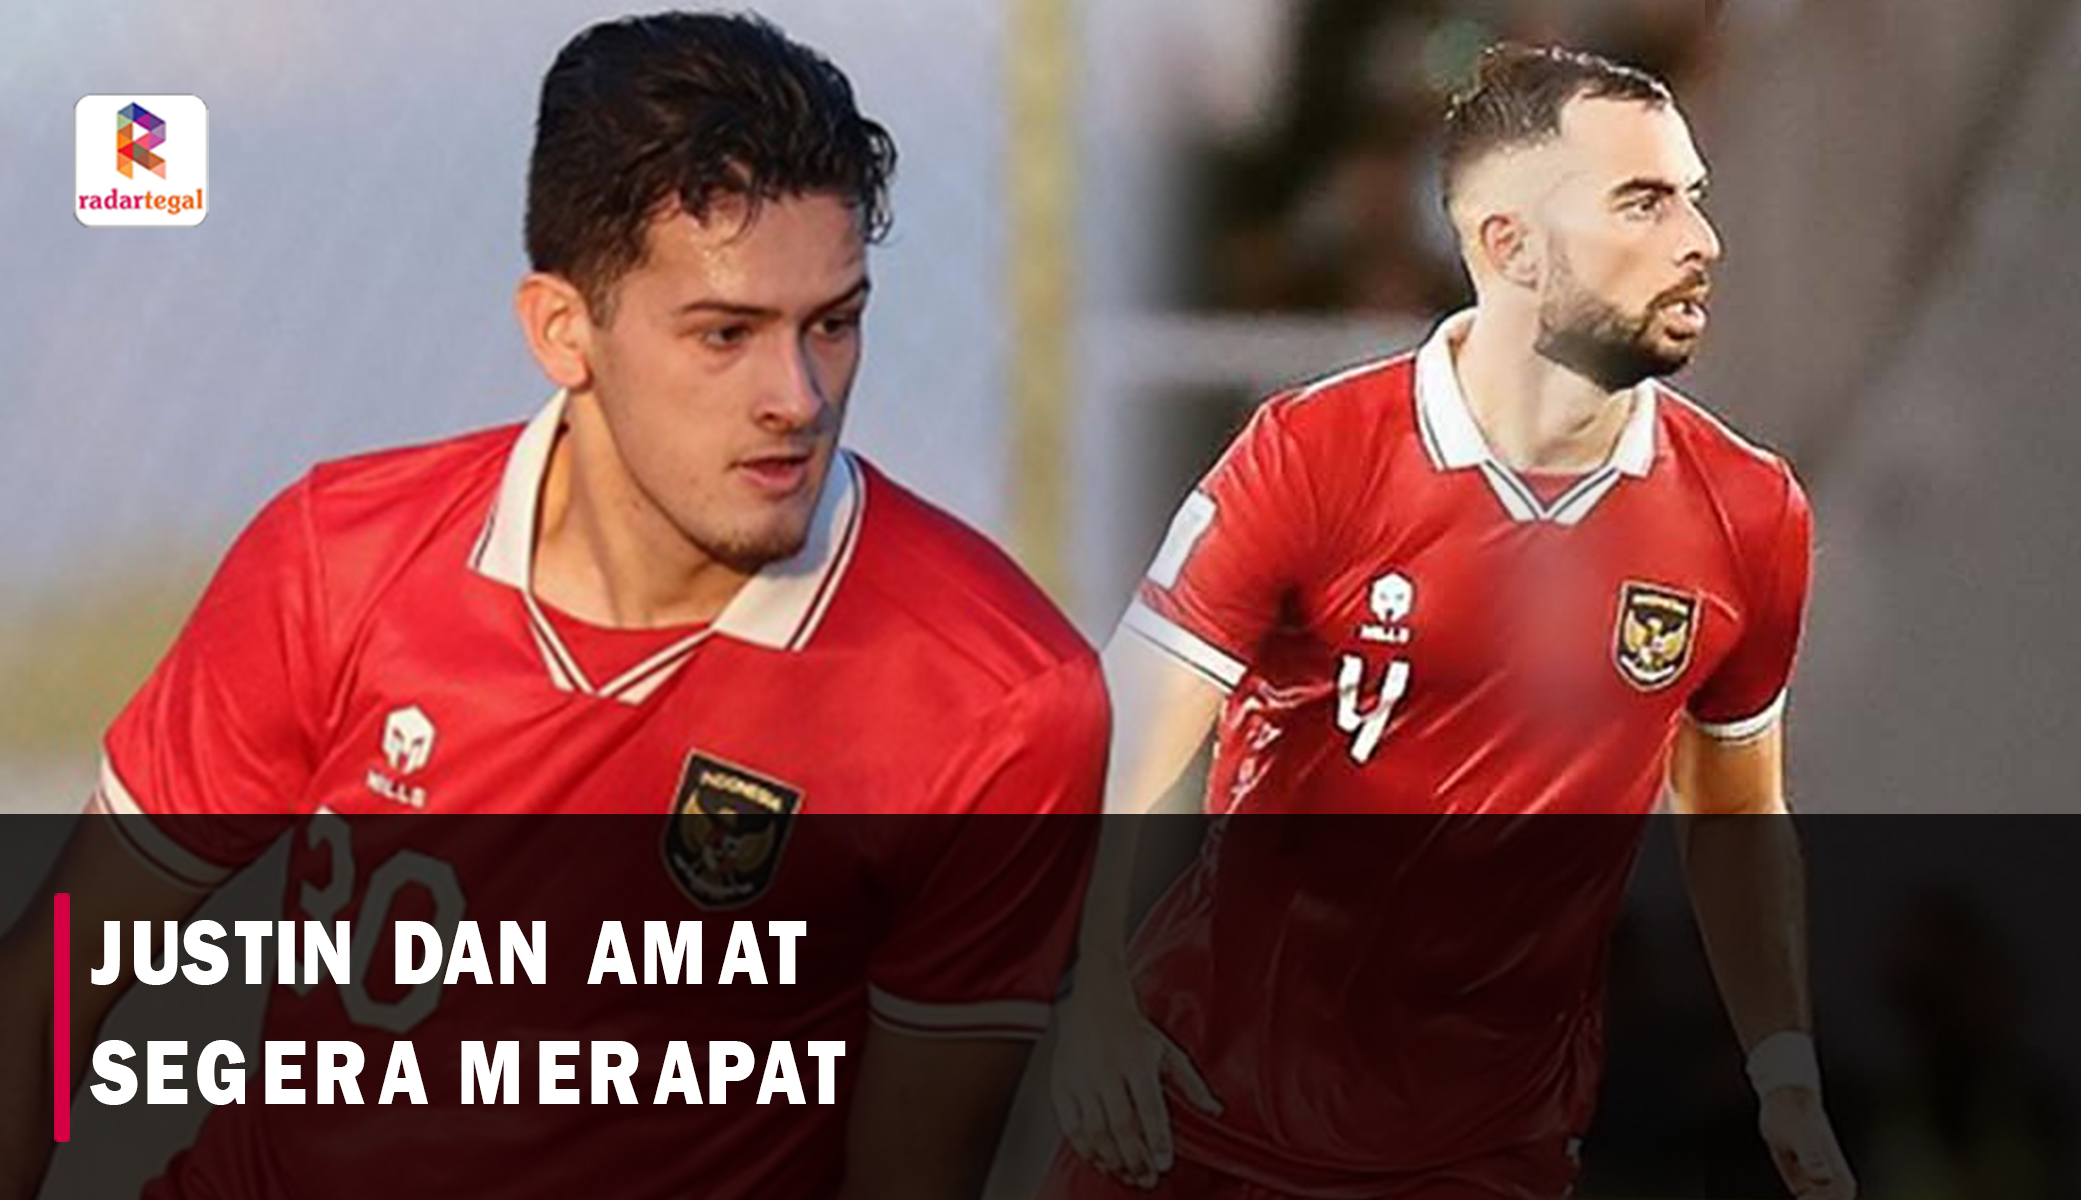 Justin dan Jordi Segera Merapat Jelang Laga Timnas Indonesia vs Tanzania, Siap Perkuat Garuda!